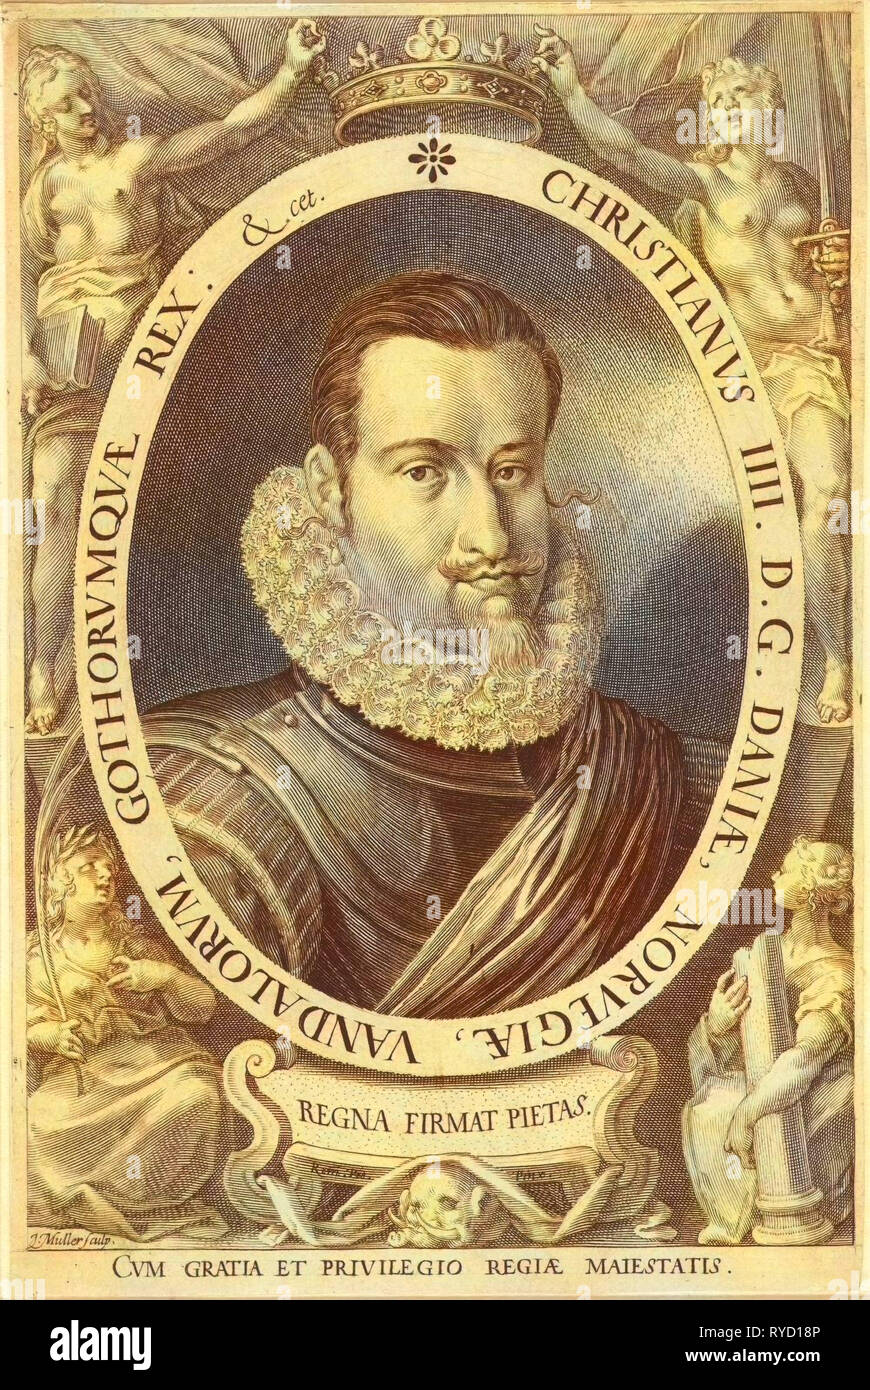 Portrait of King Christian IV of Denmark and Norway, Jan Harmensz. Muller, 1604 - 1608 Stock Photo